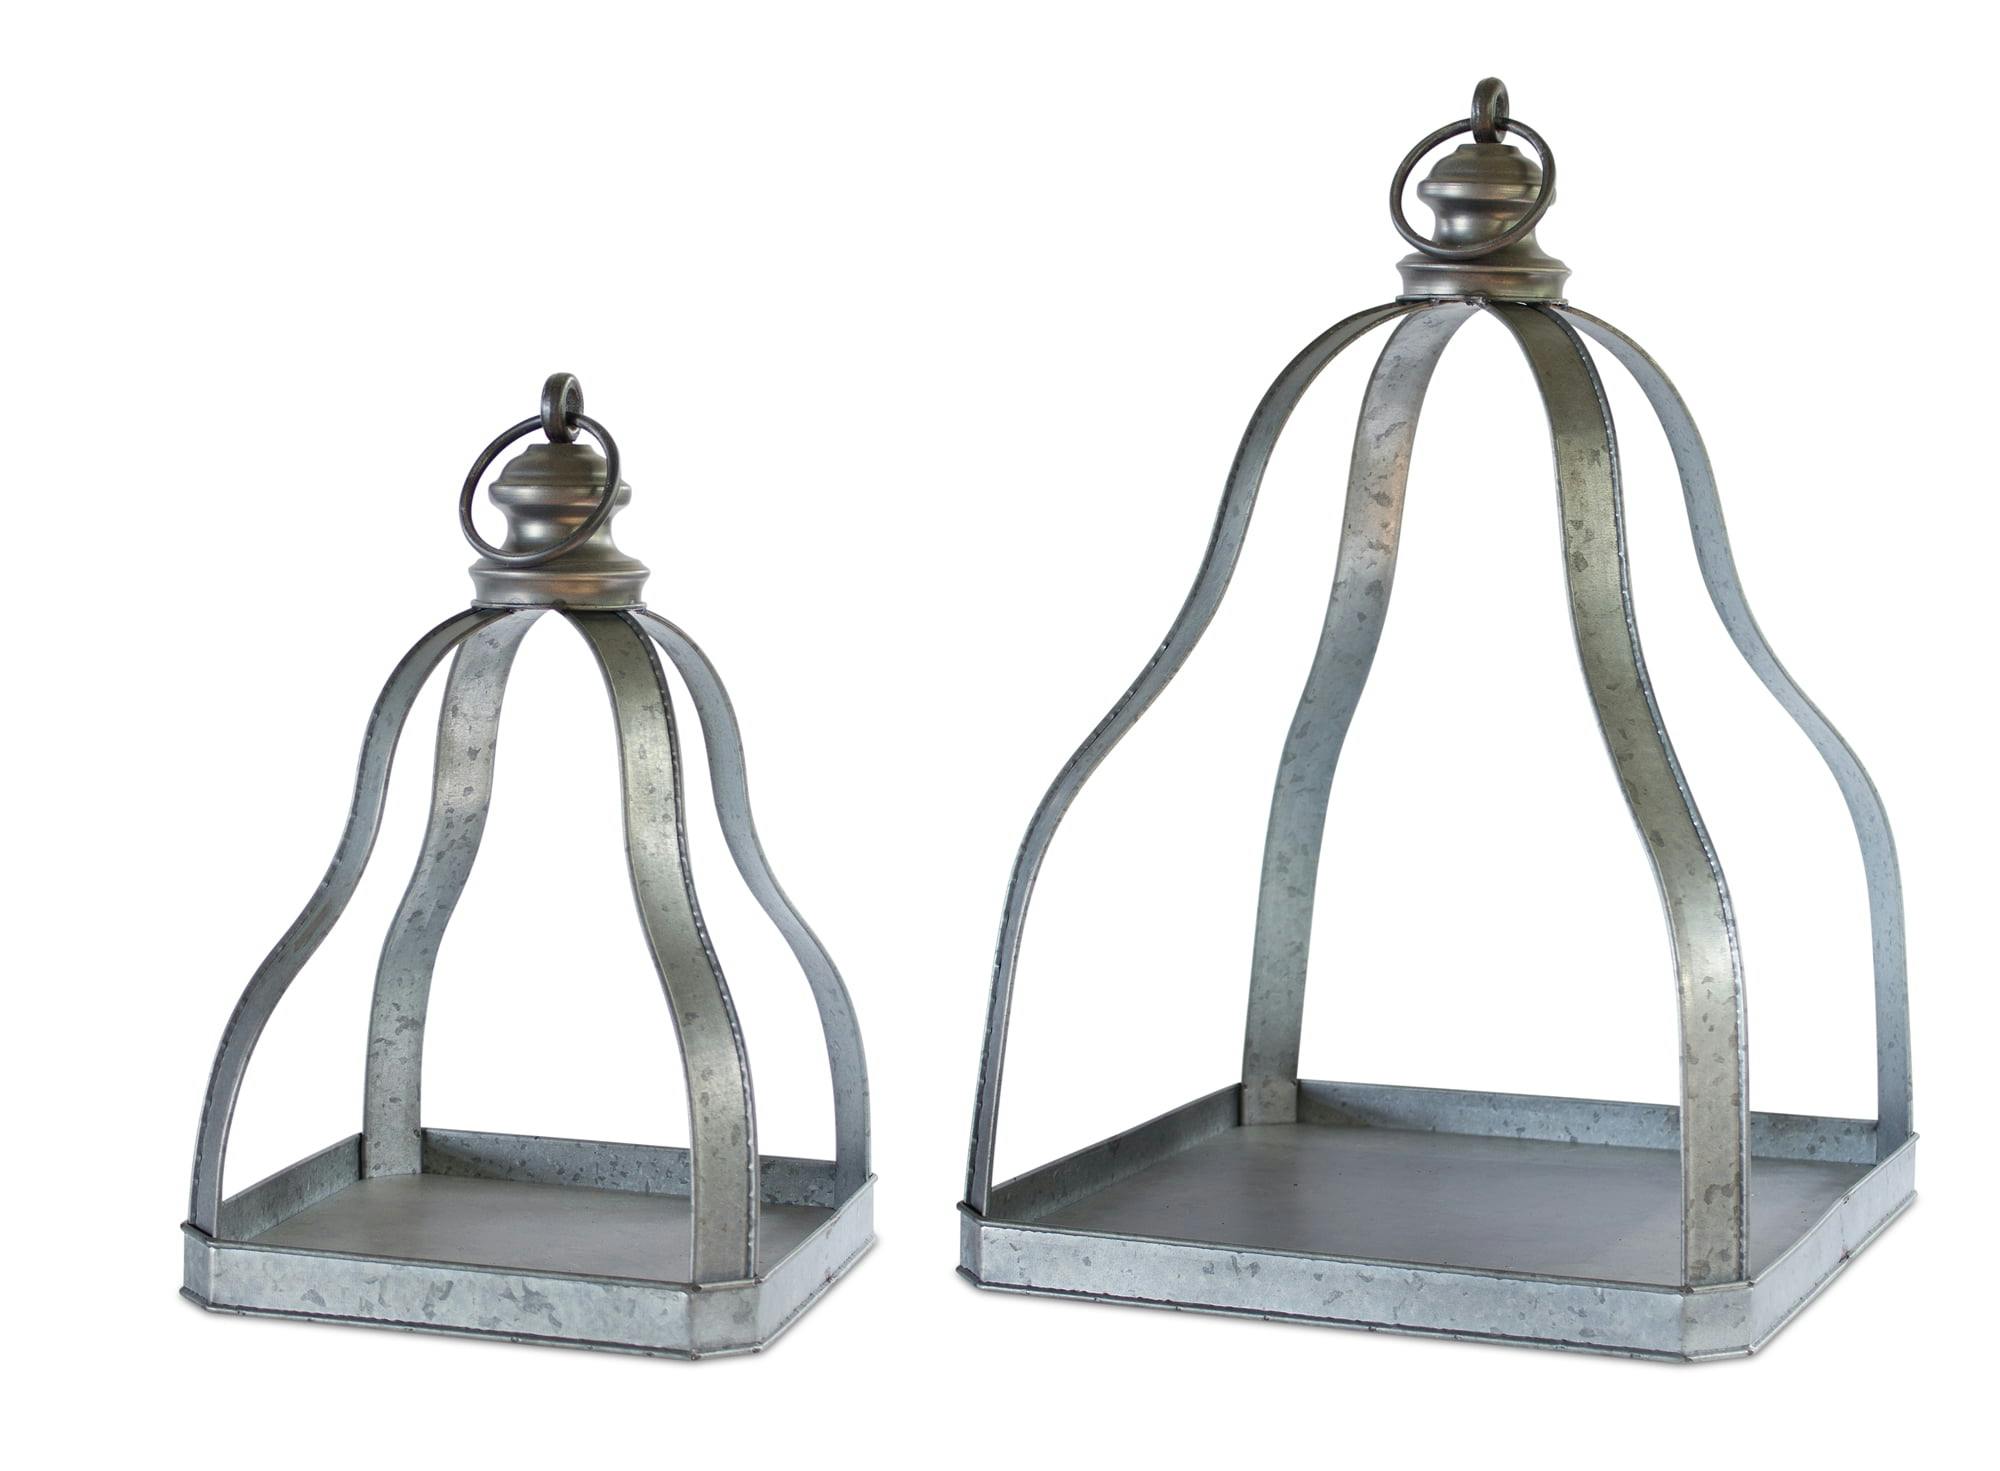 Rustic Galvanized Metal Hanging Candle Lantern Set